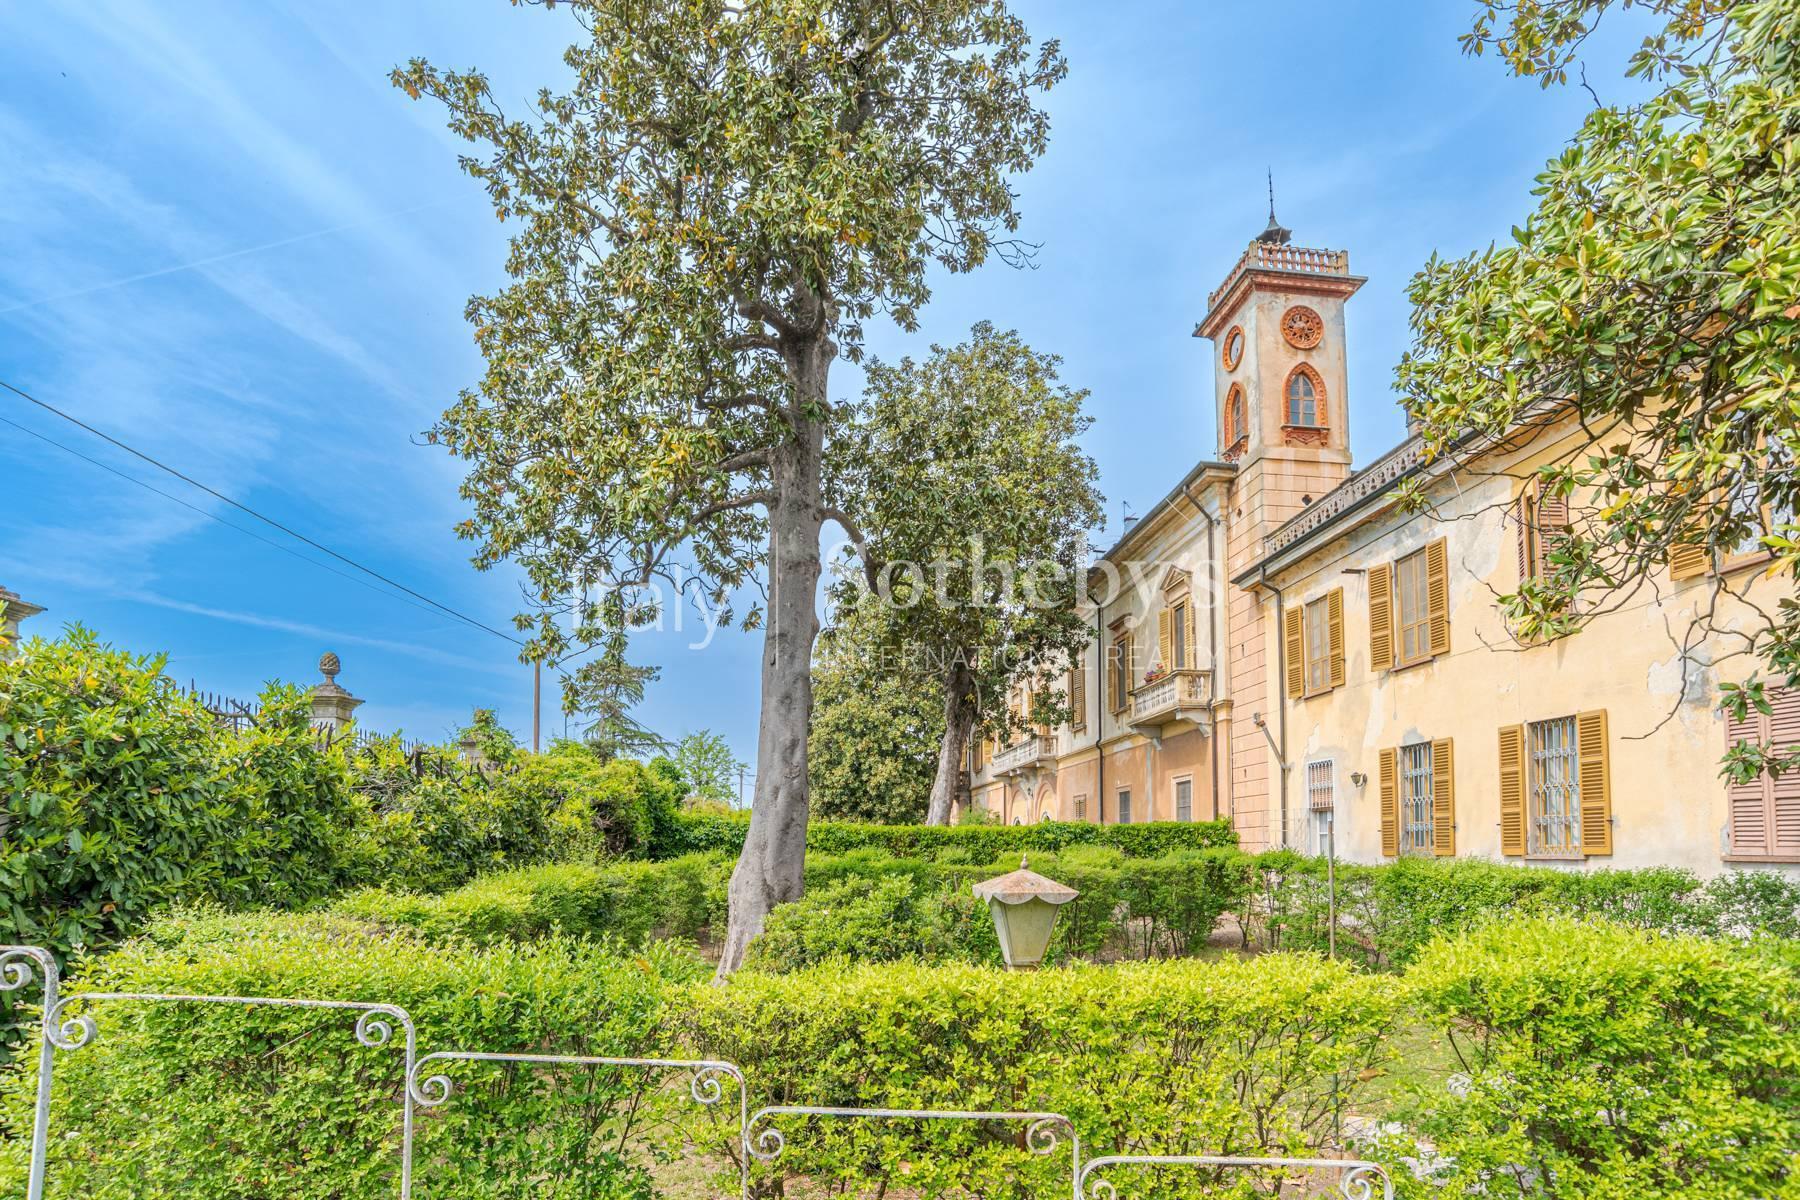 Cascina Bella - 18th century villa with park in Oltrepo' Pavese - 20